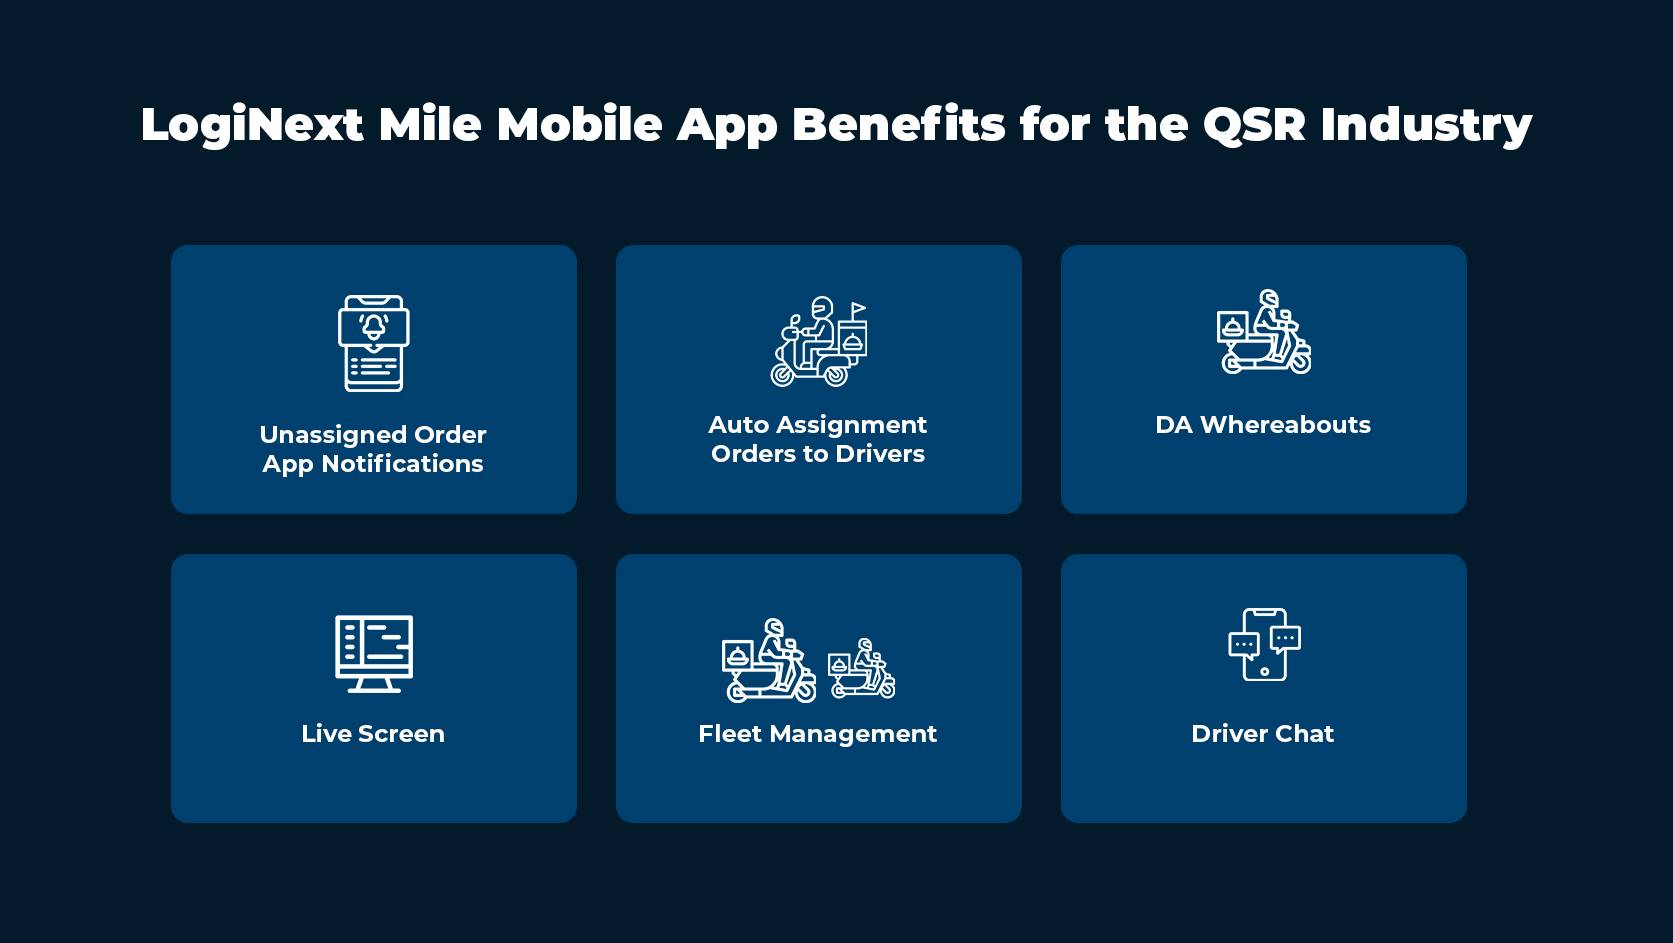 היתרונות של LogiNext Mile Mobile App עבור QSR עסקים